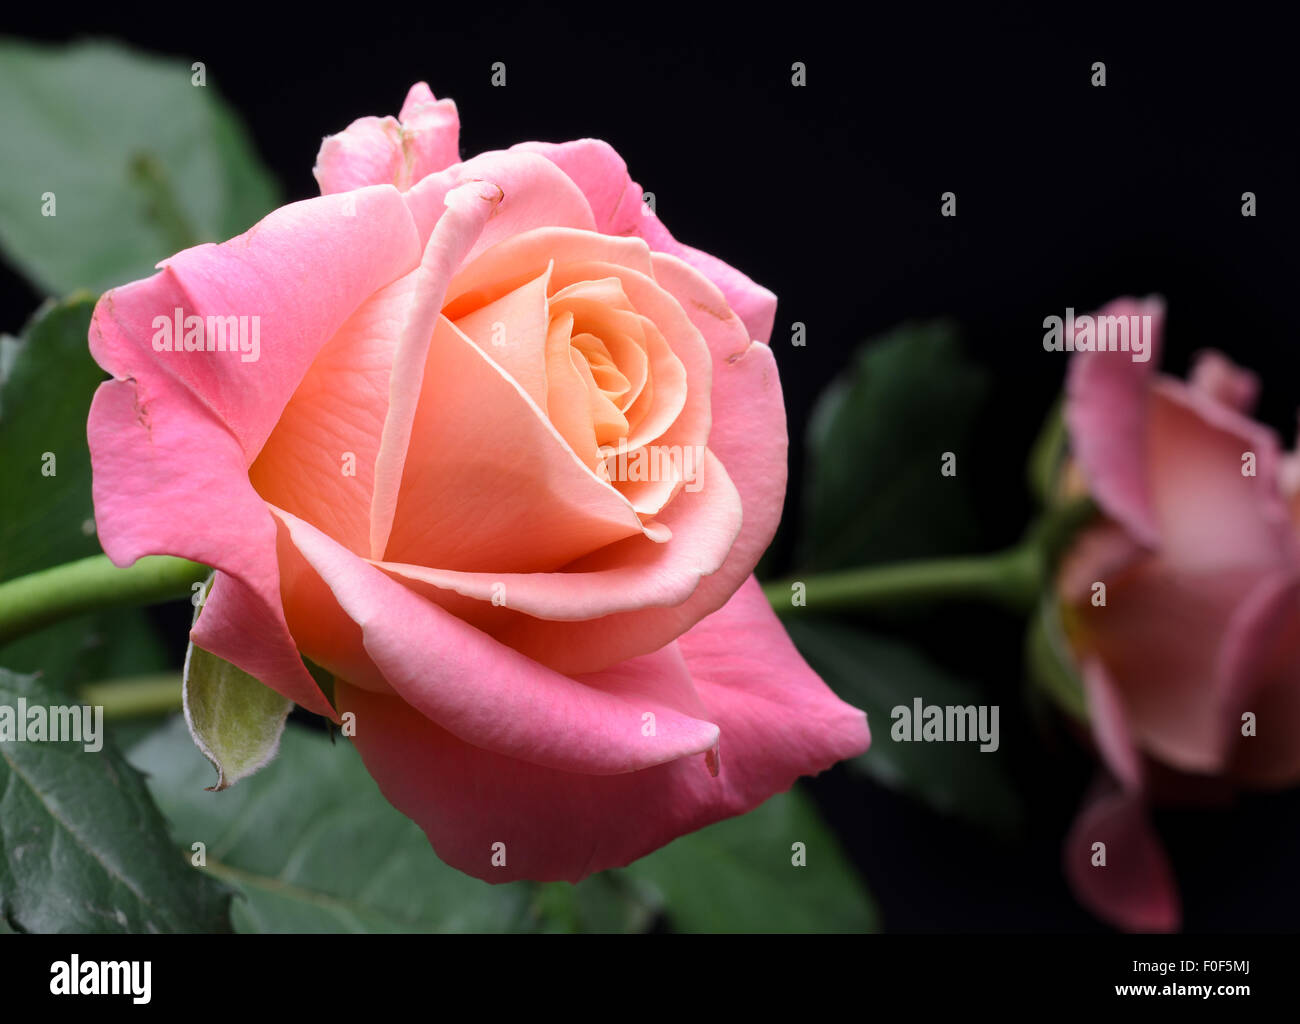 Gelb, orange, rosa cremige Rosen isoliert auf schwarzem Hintergrund, multicolor, verträumte weiche Farben. Stockfoto